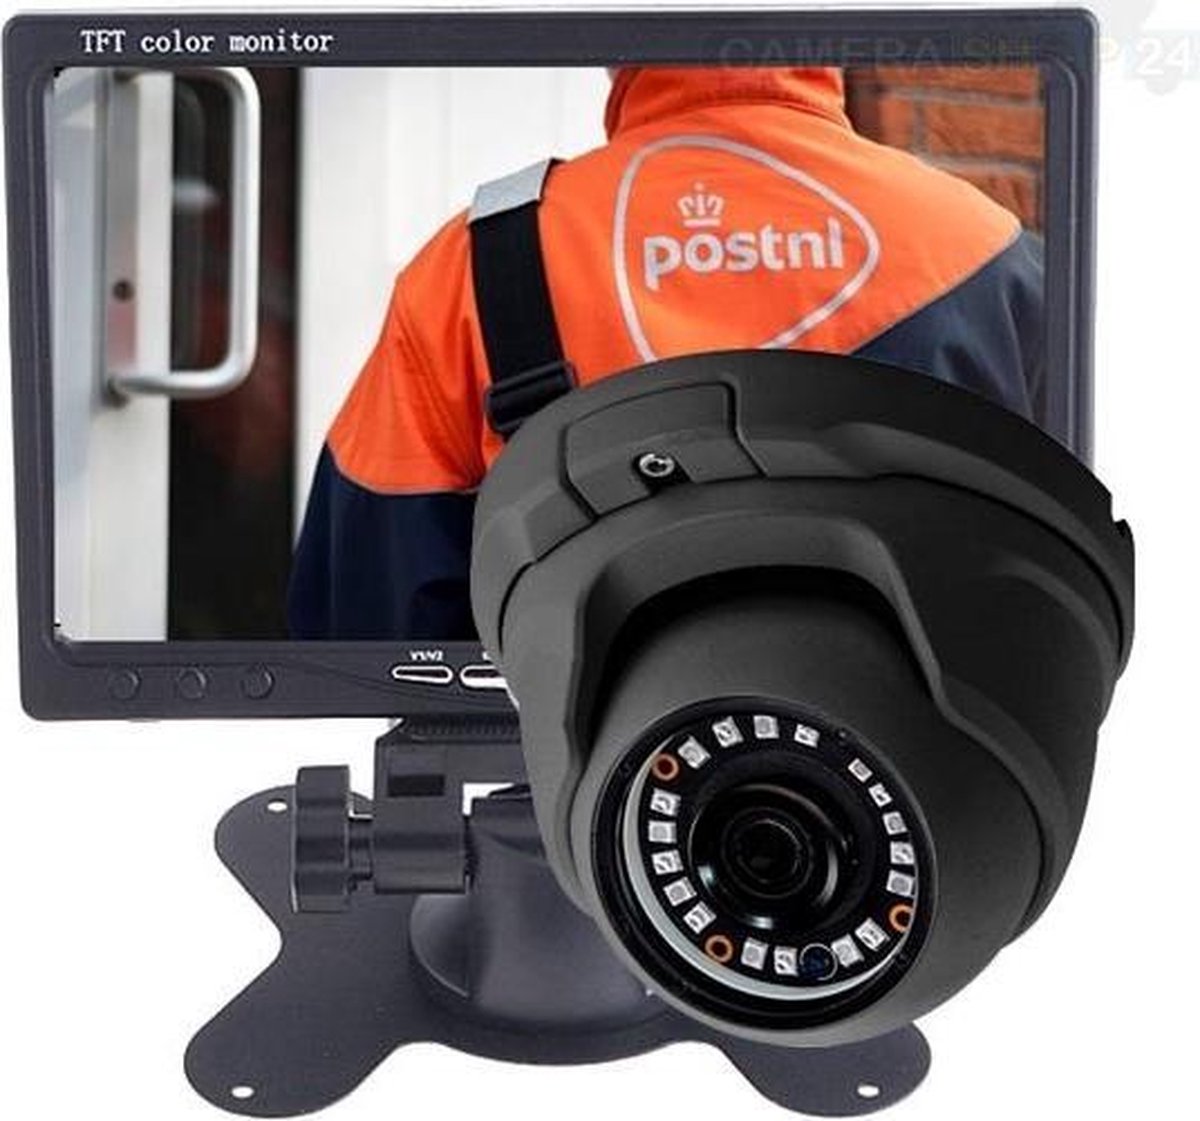 Analoge camera zwart met 7 inch TFT monitor - kijkhoek 100 graden - 20 meter nachtzicht